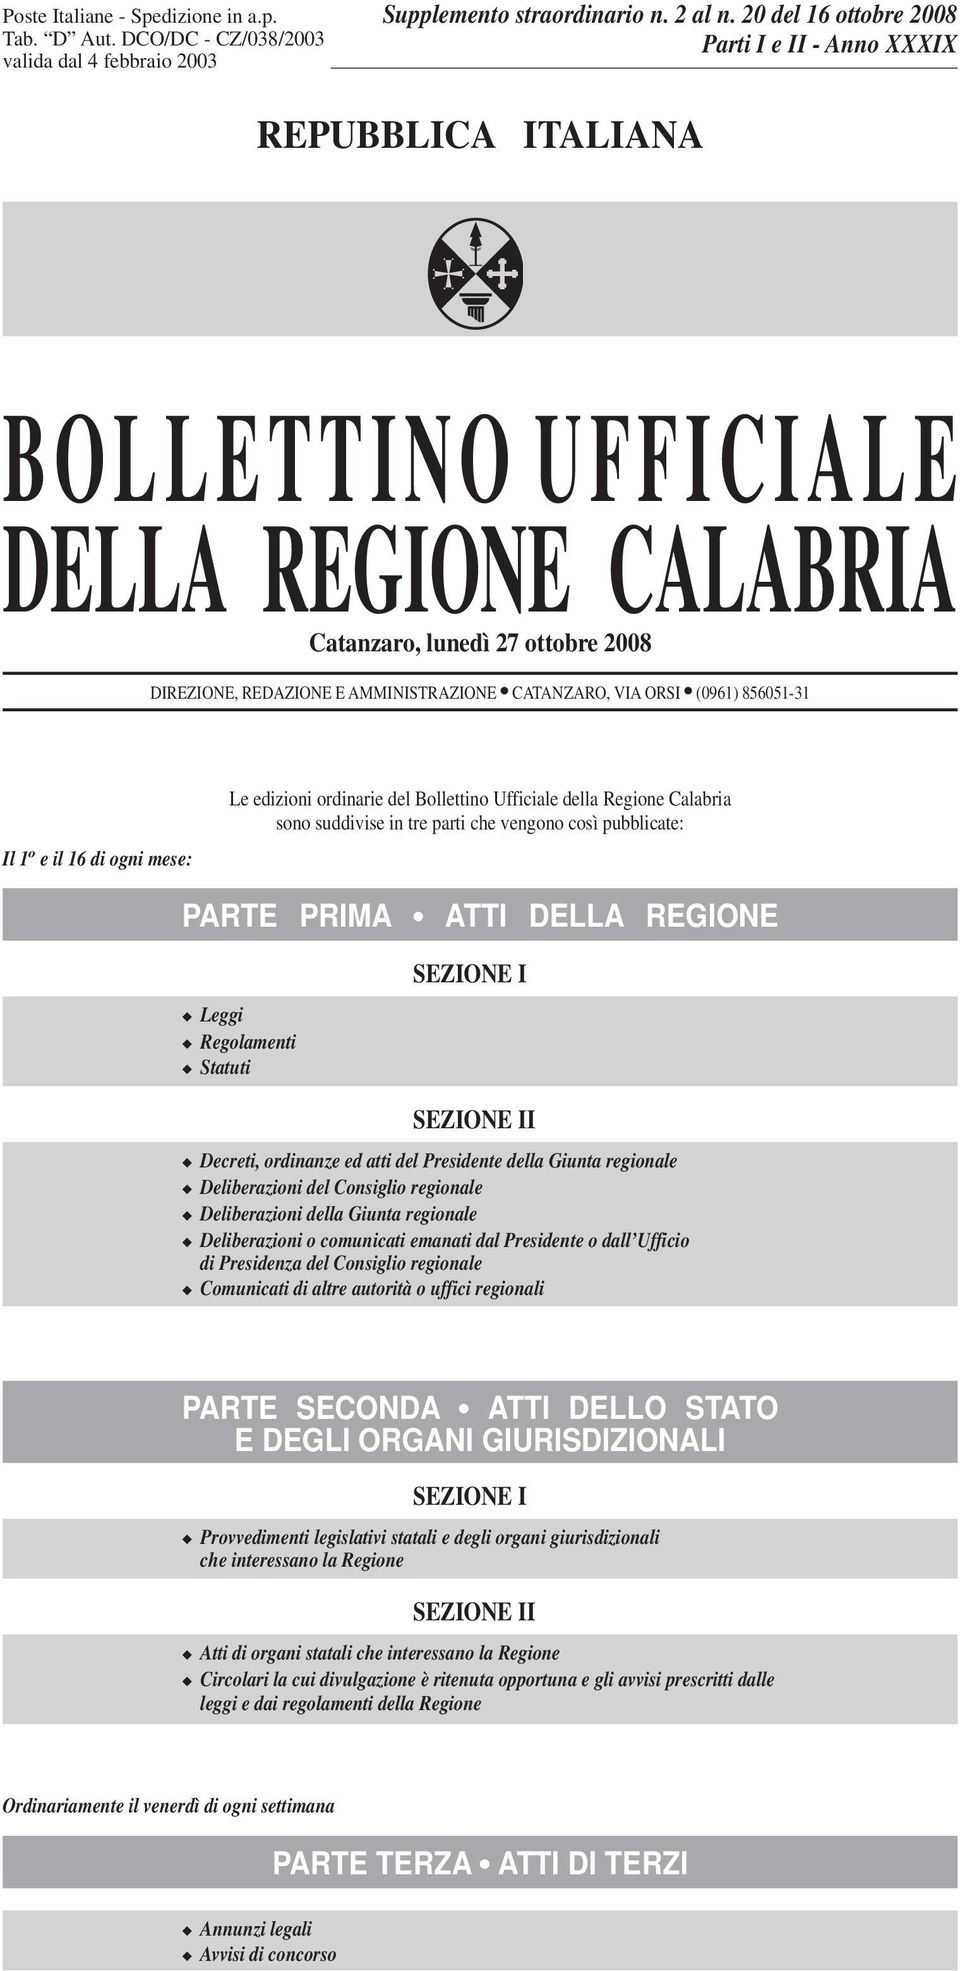 ORSI (0961) 856051-31 Il 1 o e il 16 di ogni mese: Le edizioni ordinarie del Bollettino Ufficiale della Regione Calabria sono suddivise in tre parti che vengono così pubblicate: PARTE PRIMA ATTI